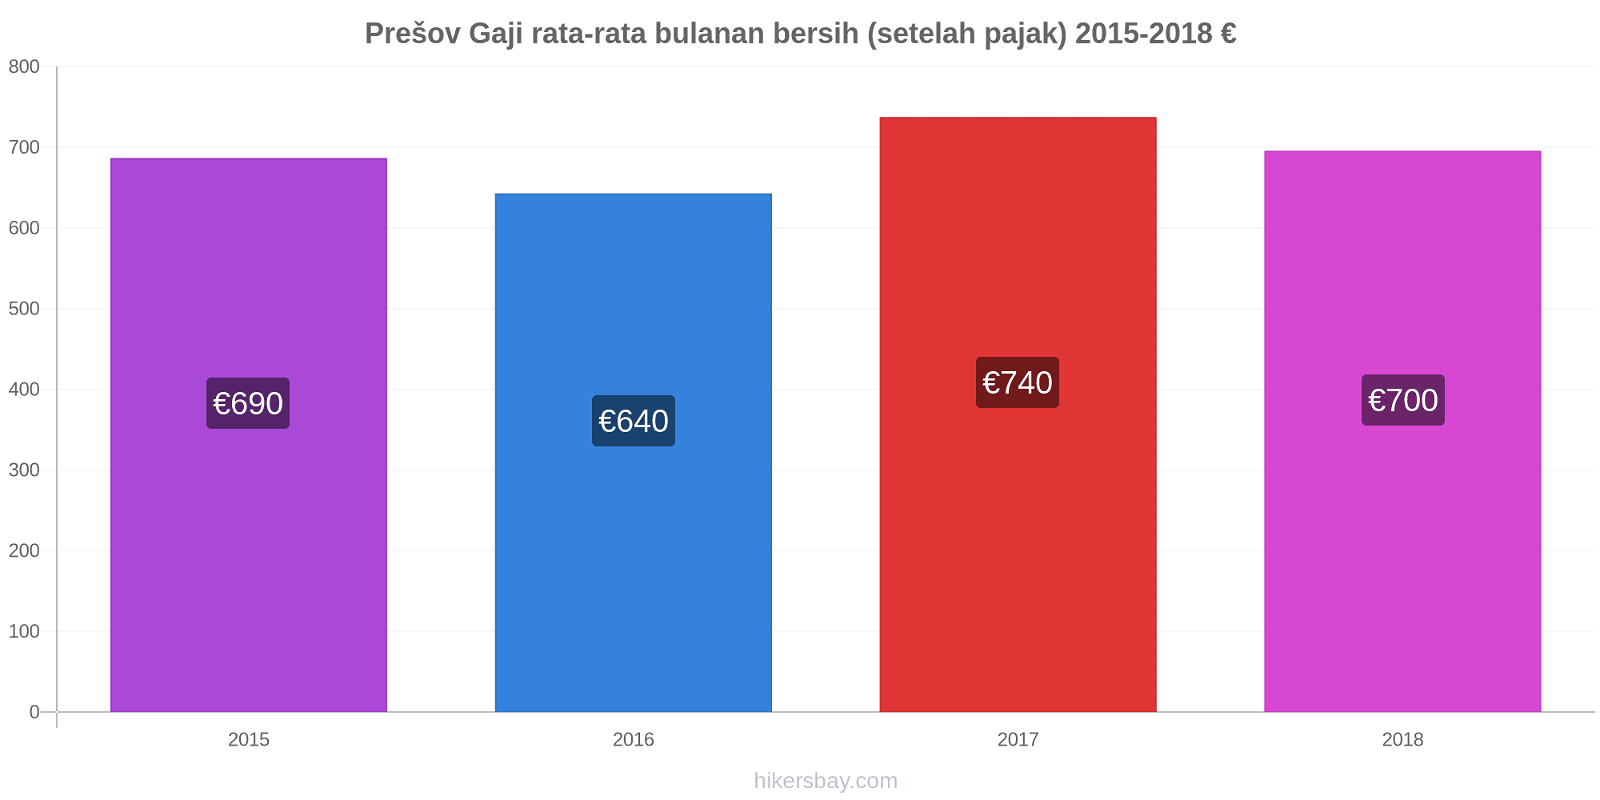 Prešov perubahan harga Gaji rata-rata bulanan bersih (setelah pajak) hikersbay.com